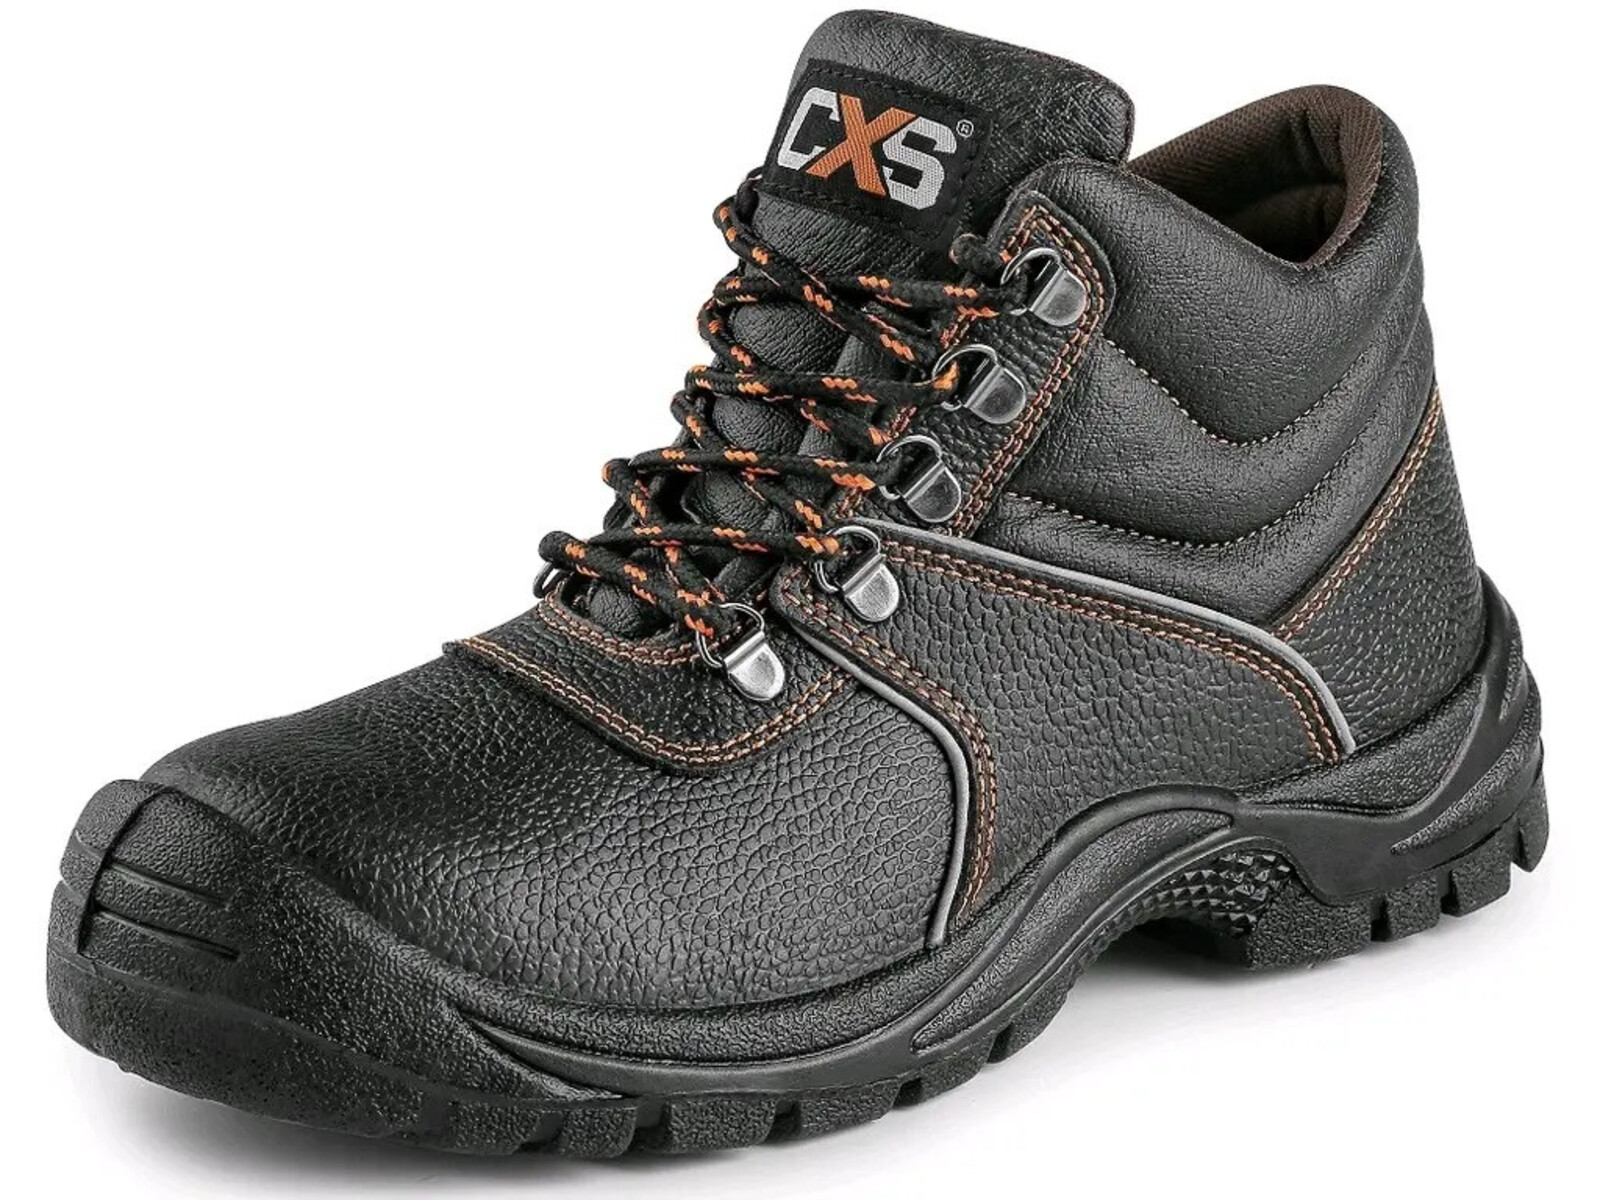 Bezpečnostná členková obuv CXS Stone Marble S2 SRC - veľkosť: 45, farba: čierna/oranžová